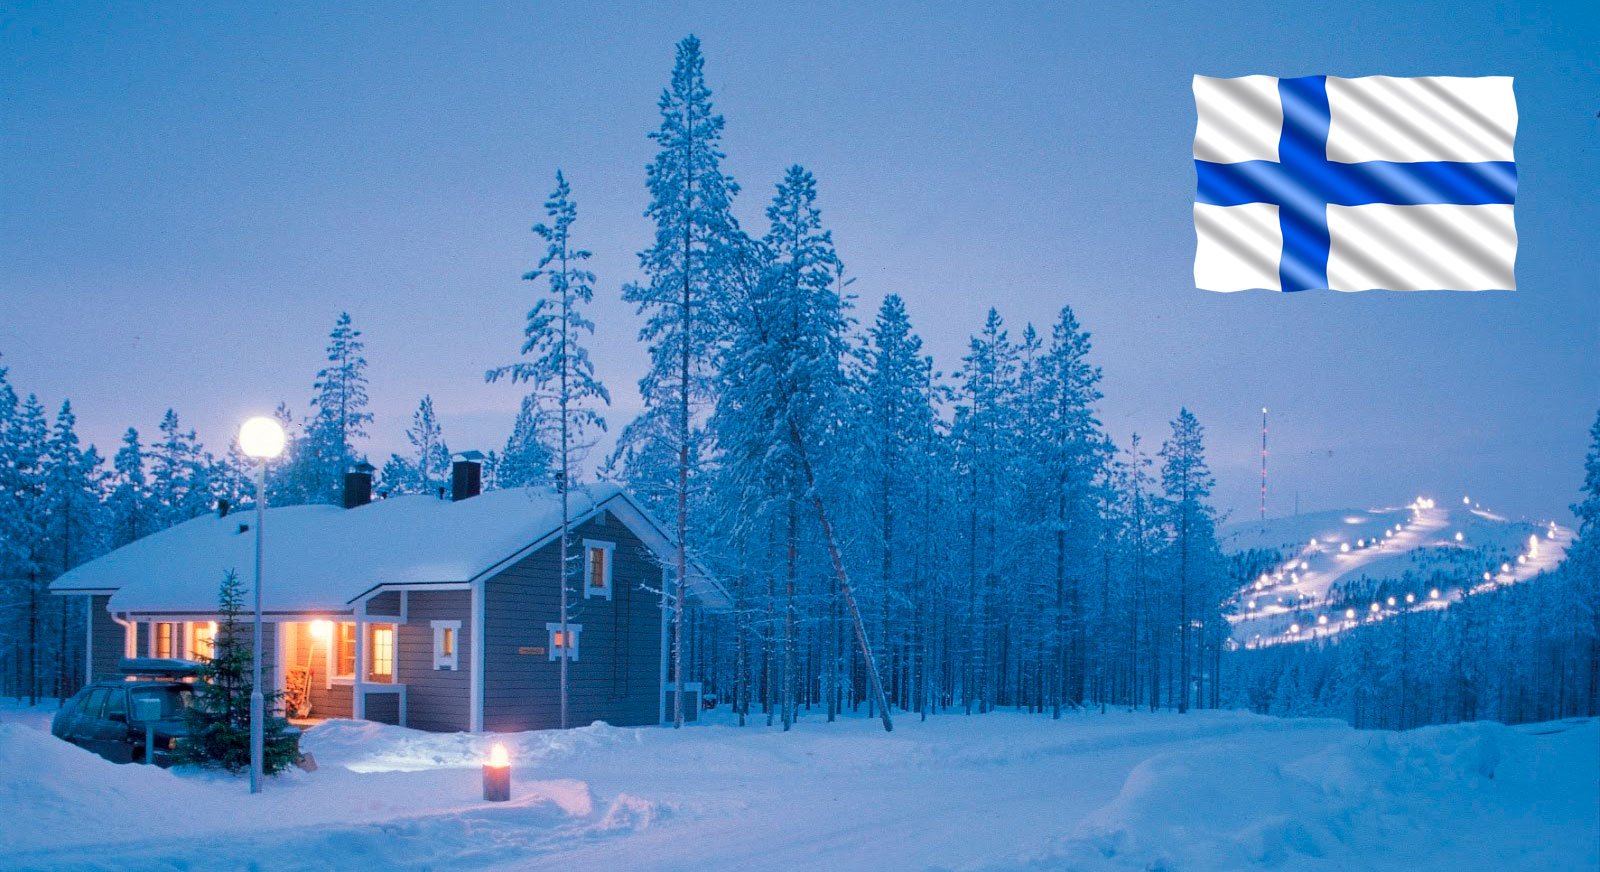 страна финляндия и ее